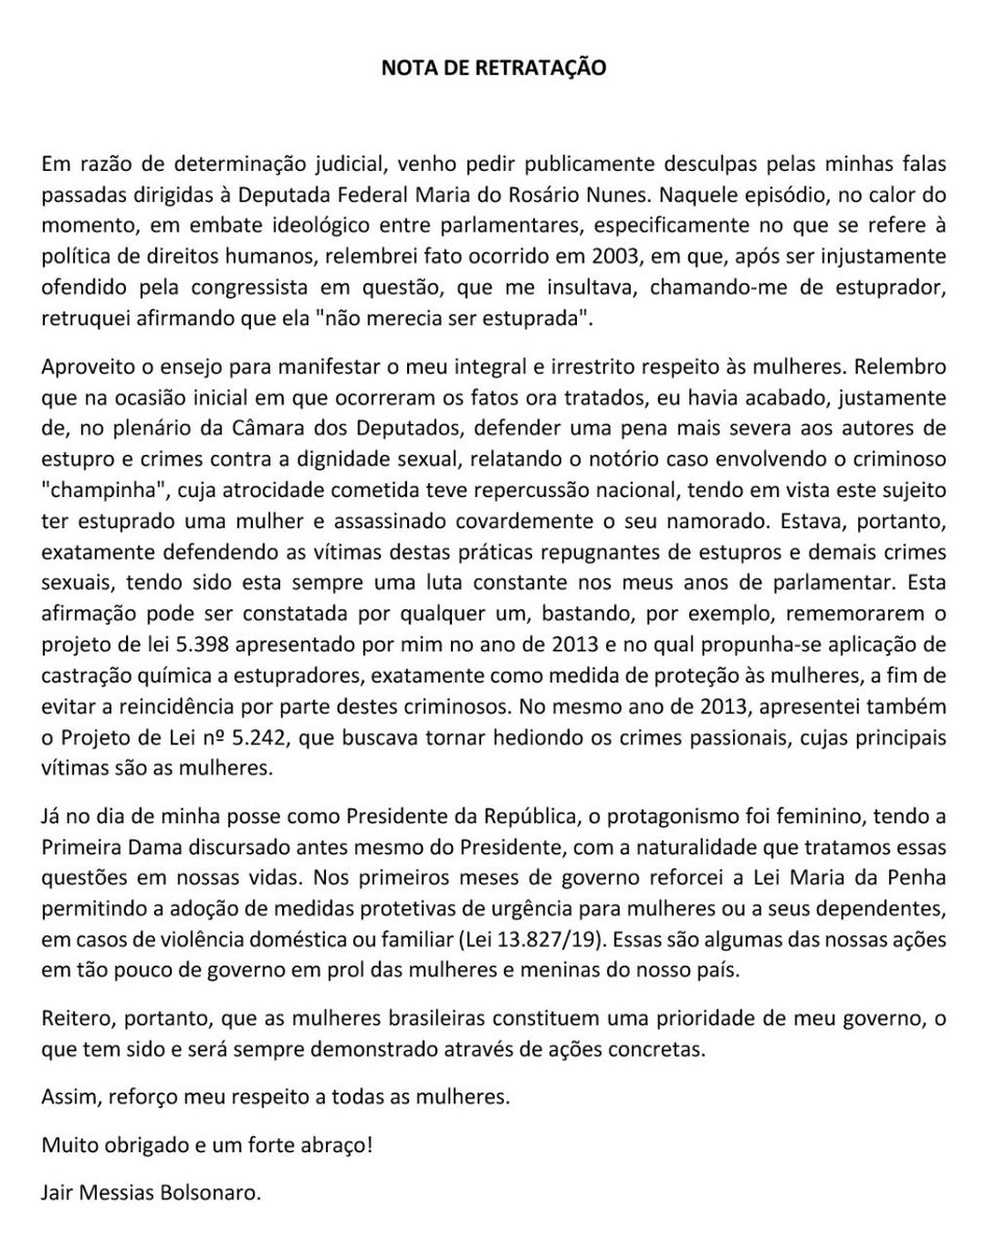 Ãntegra da nota de retrataÃ§Ã£o publicada por Bolsonaro em redes sociais â€” Foto: ReproduÃ§Ã£o